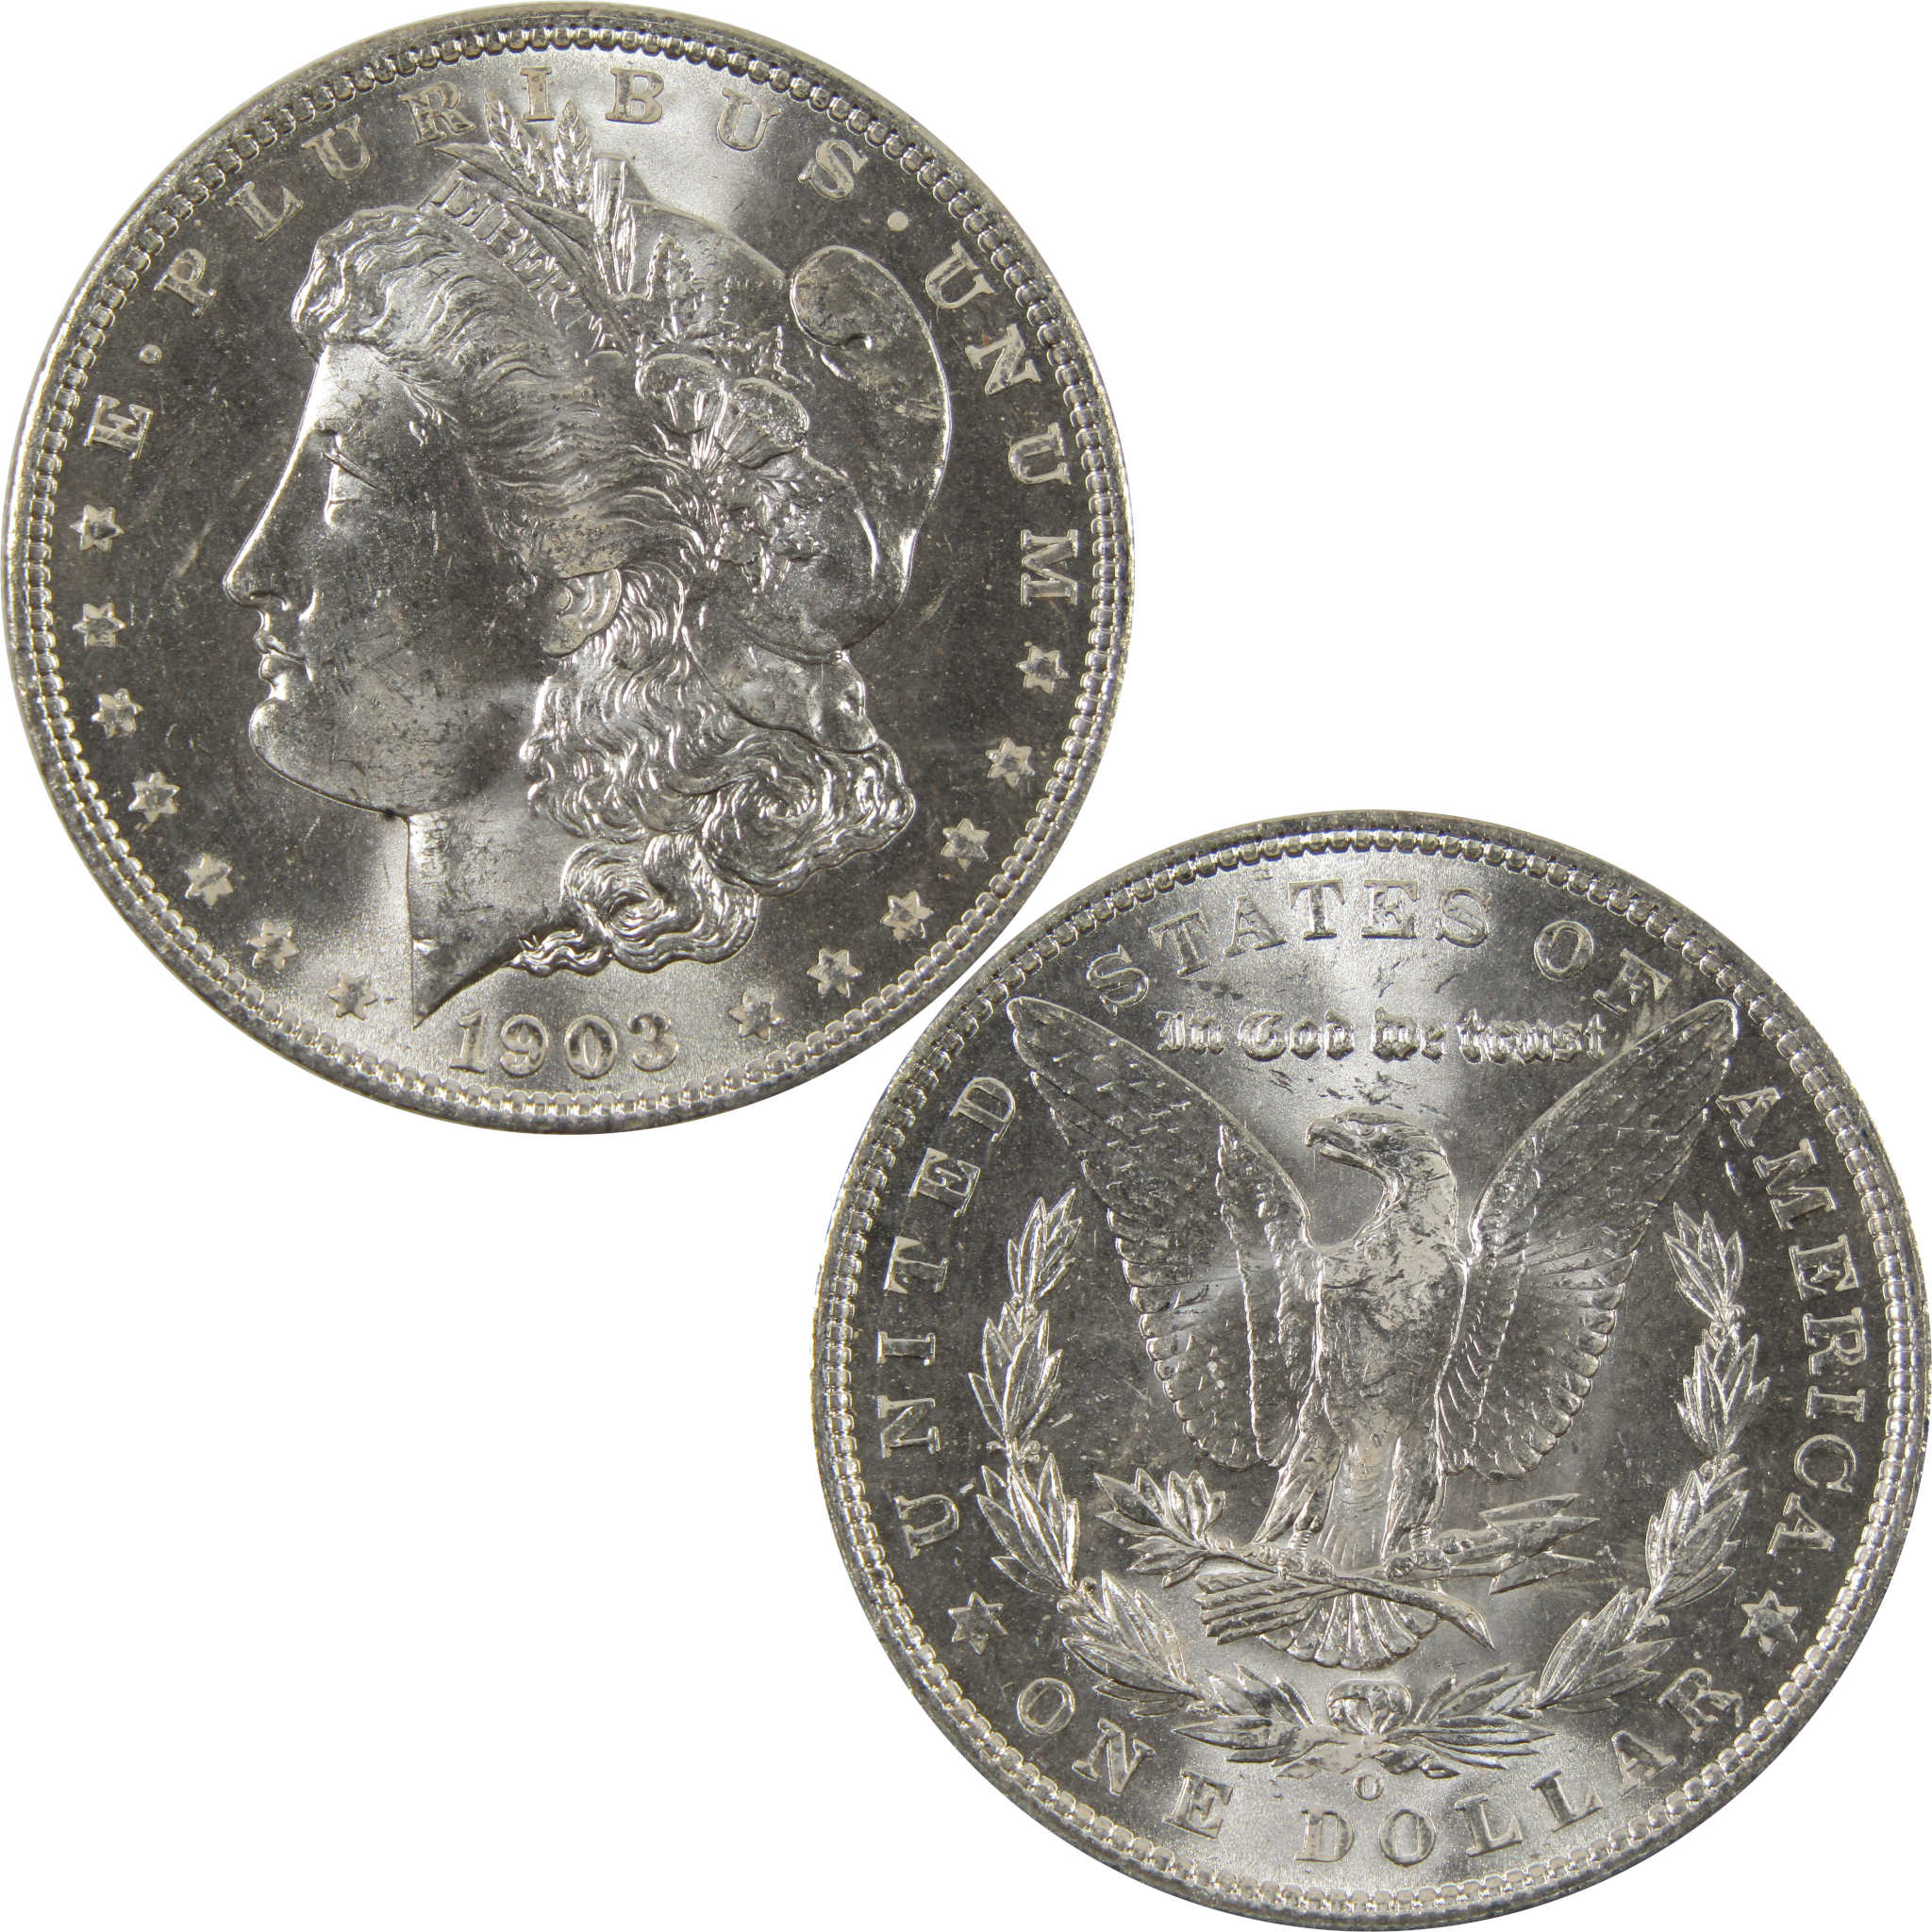 1903 O Morgan Dollar BU Choice Uncirculated 90% Silver $1 SKU:I7512 - Morgan coin - Morgan silver dollar - Morgan silver dollar for sale - Profile Coins &amp; Collectibles